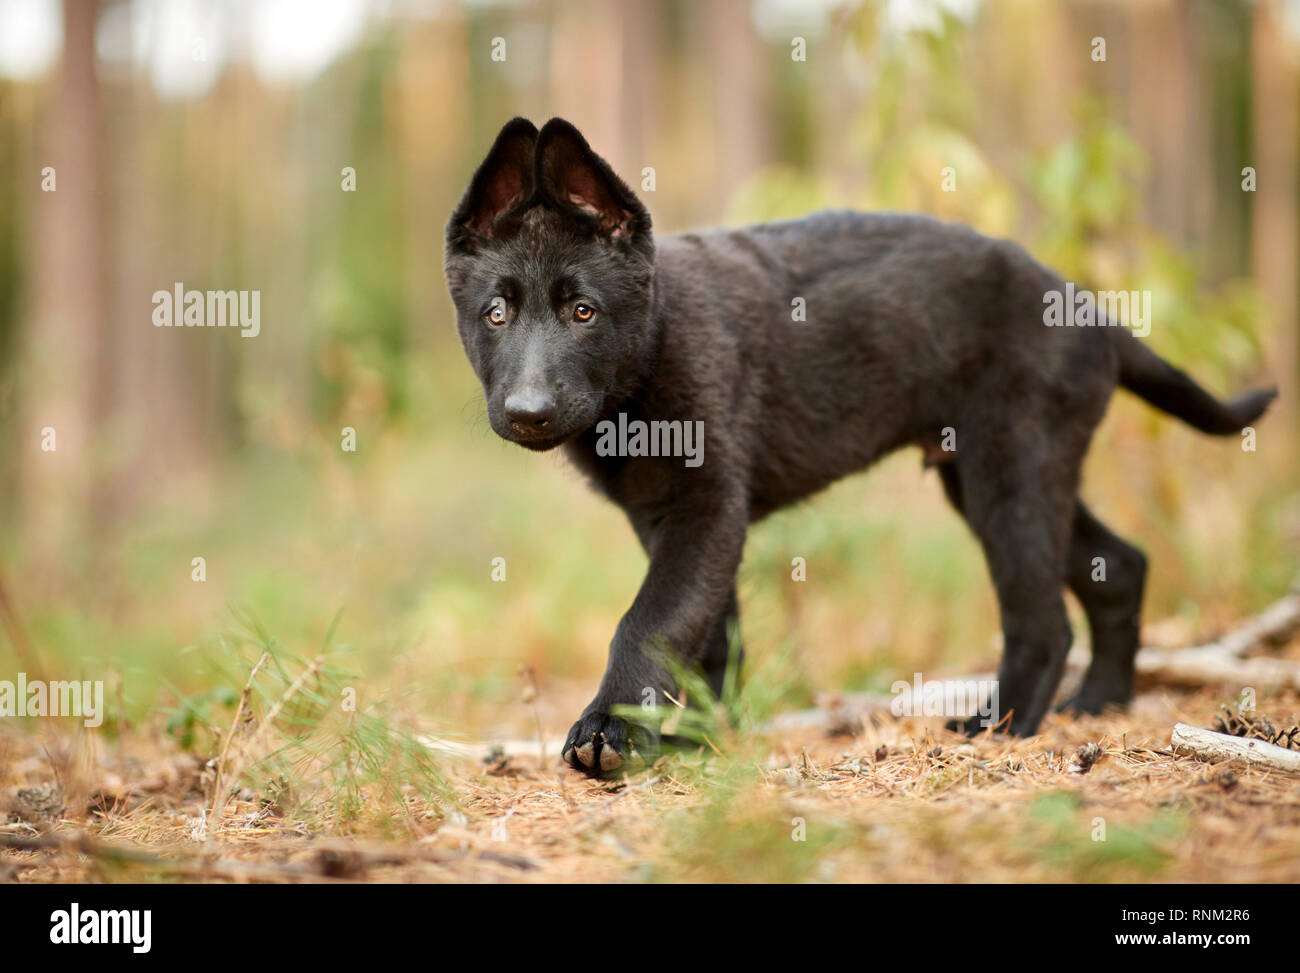 German Shepherd, Alsatian. Black puppy walking in a forest. Germany Stock Photo